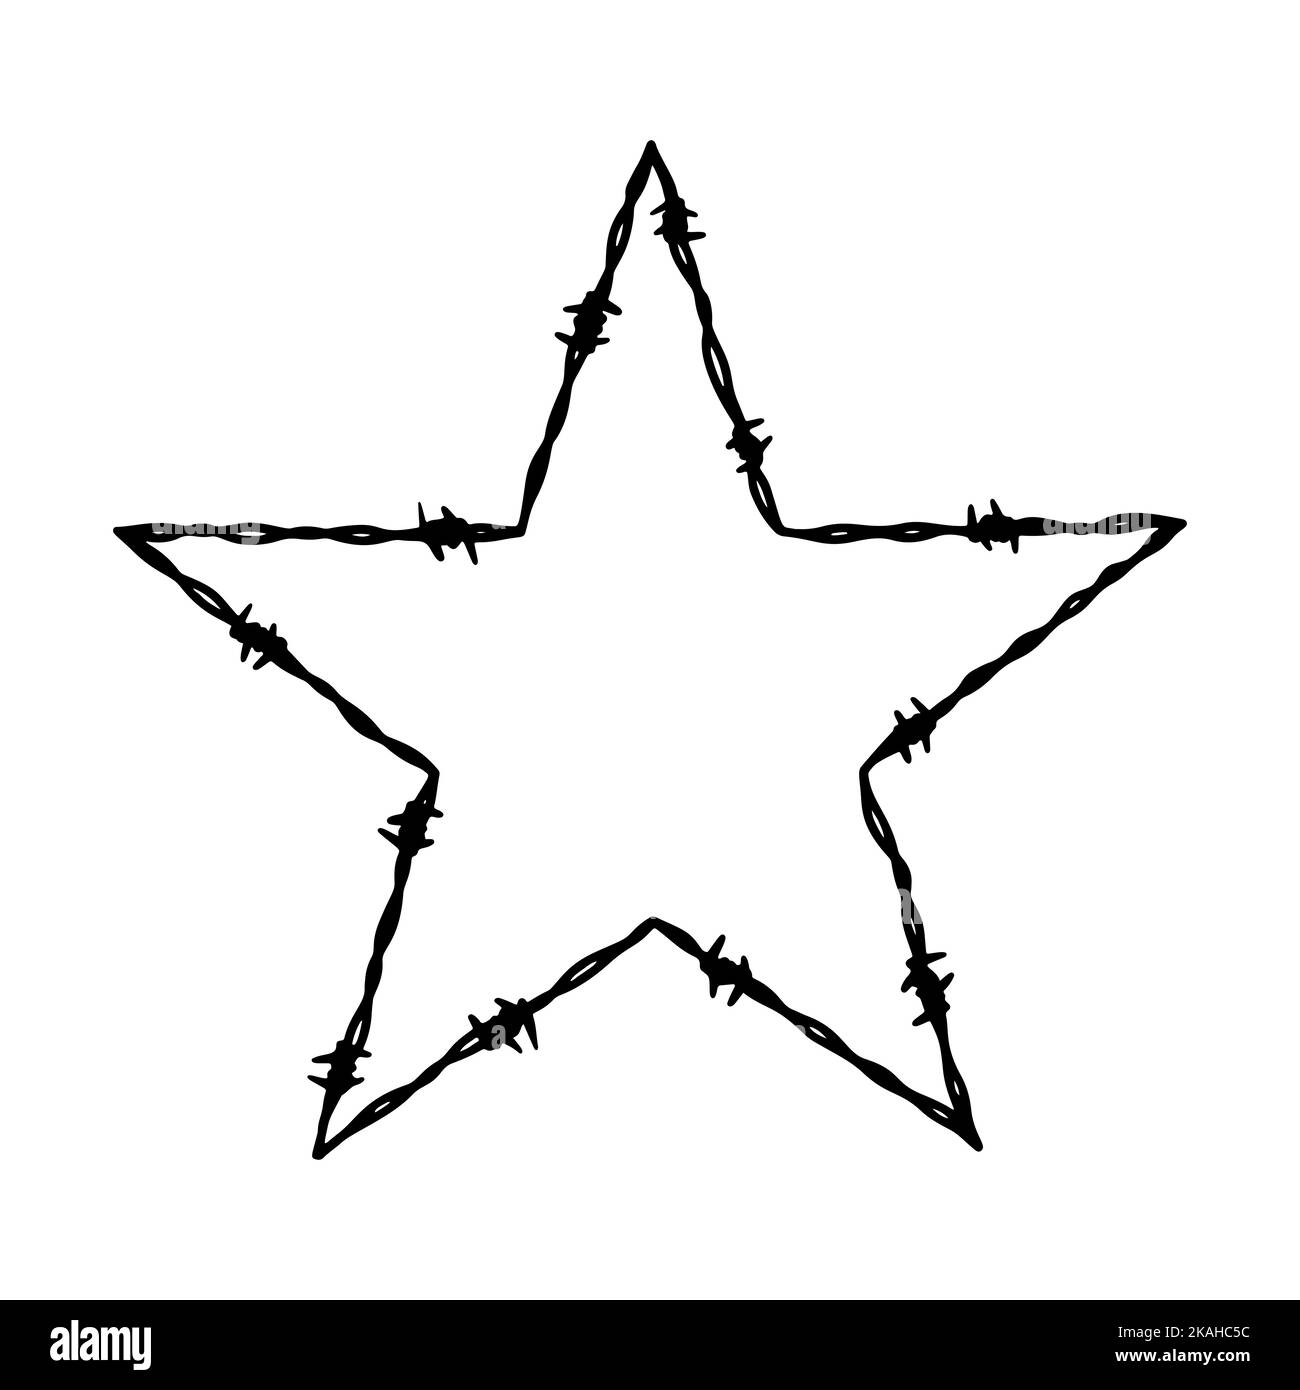 Barbwire fünfzackiger sternförmiger Rahmen. Handgezeichnete Vektorgrafik im Skizzenstil. Design-Element für Militär, Sicherheit, Gefängnis, Sklaverei-Konzept Stock Vektor